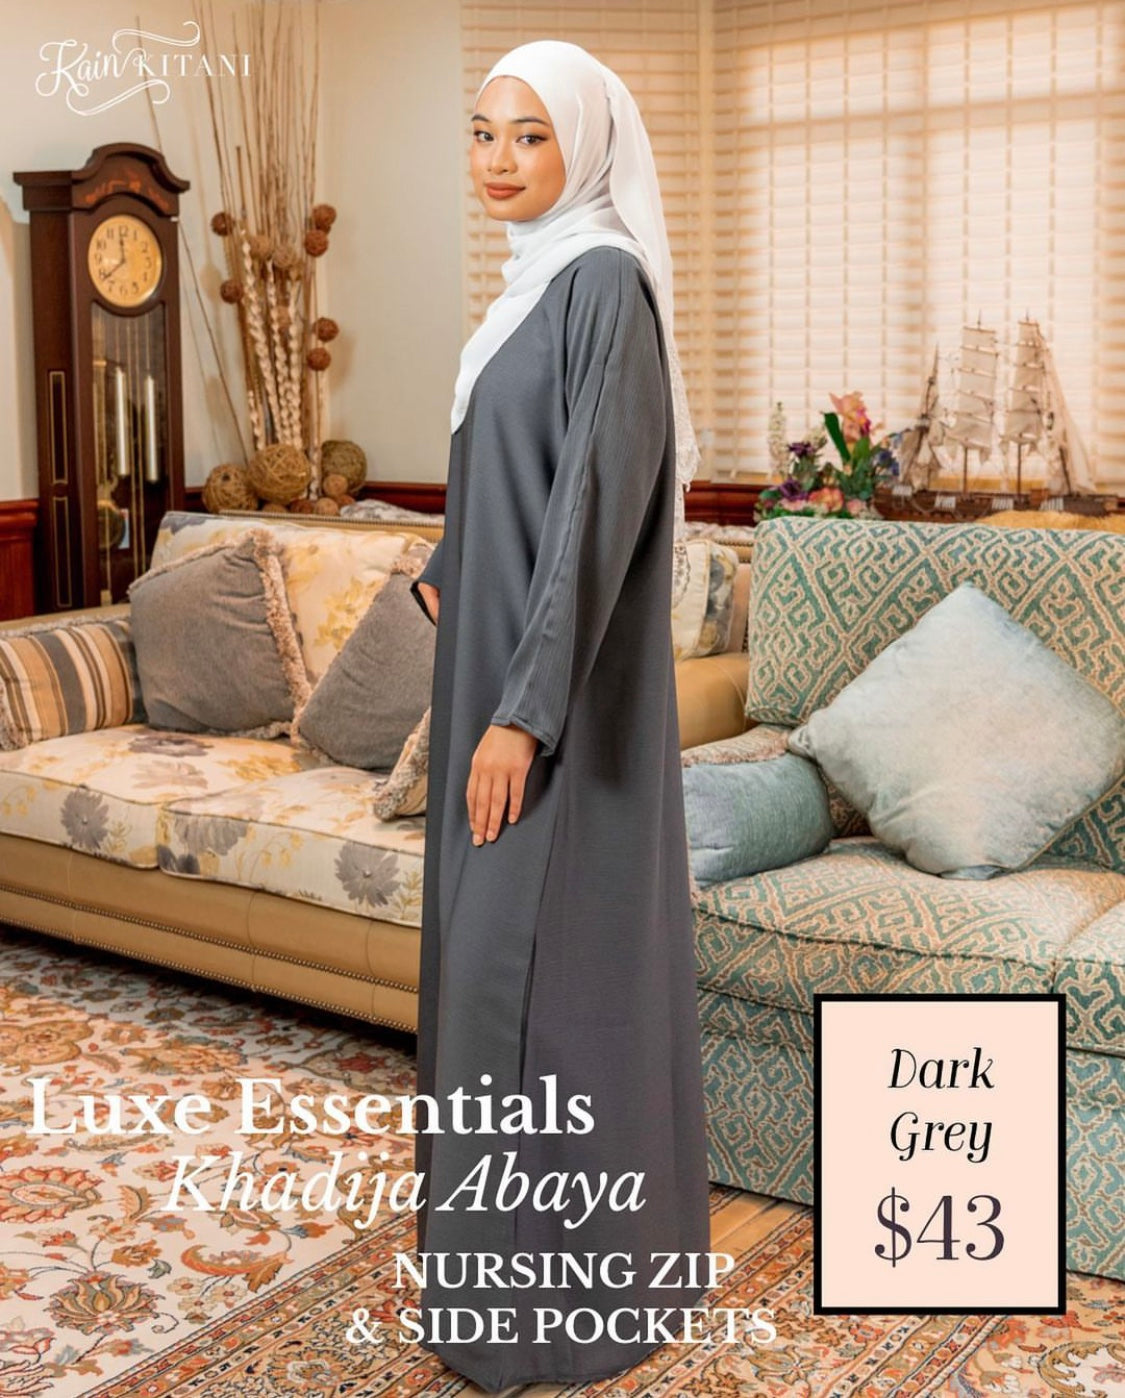 Luxe Essential - Khadija (With Nursing Zip)